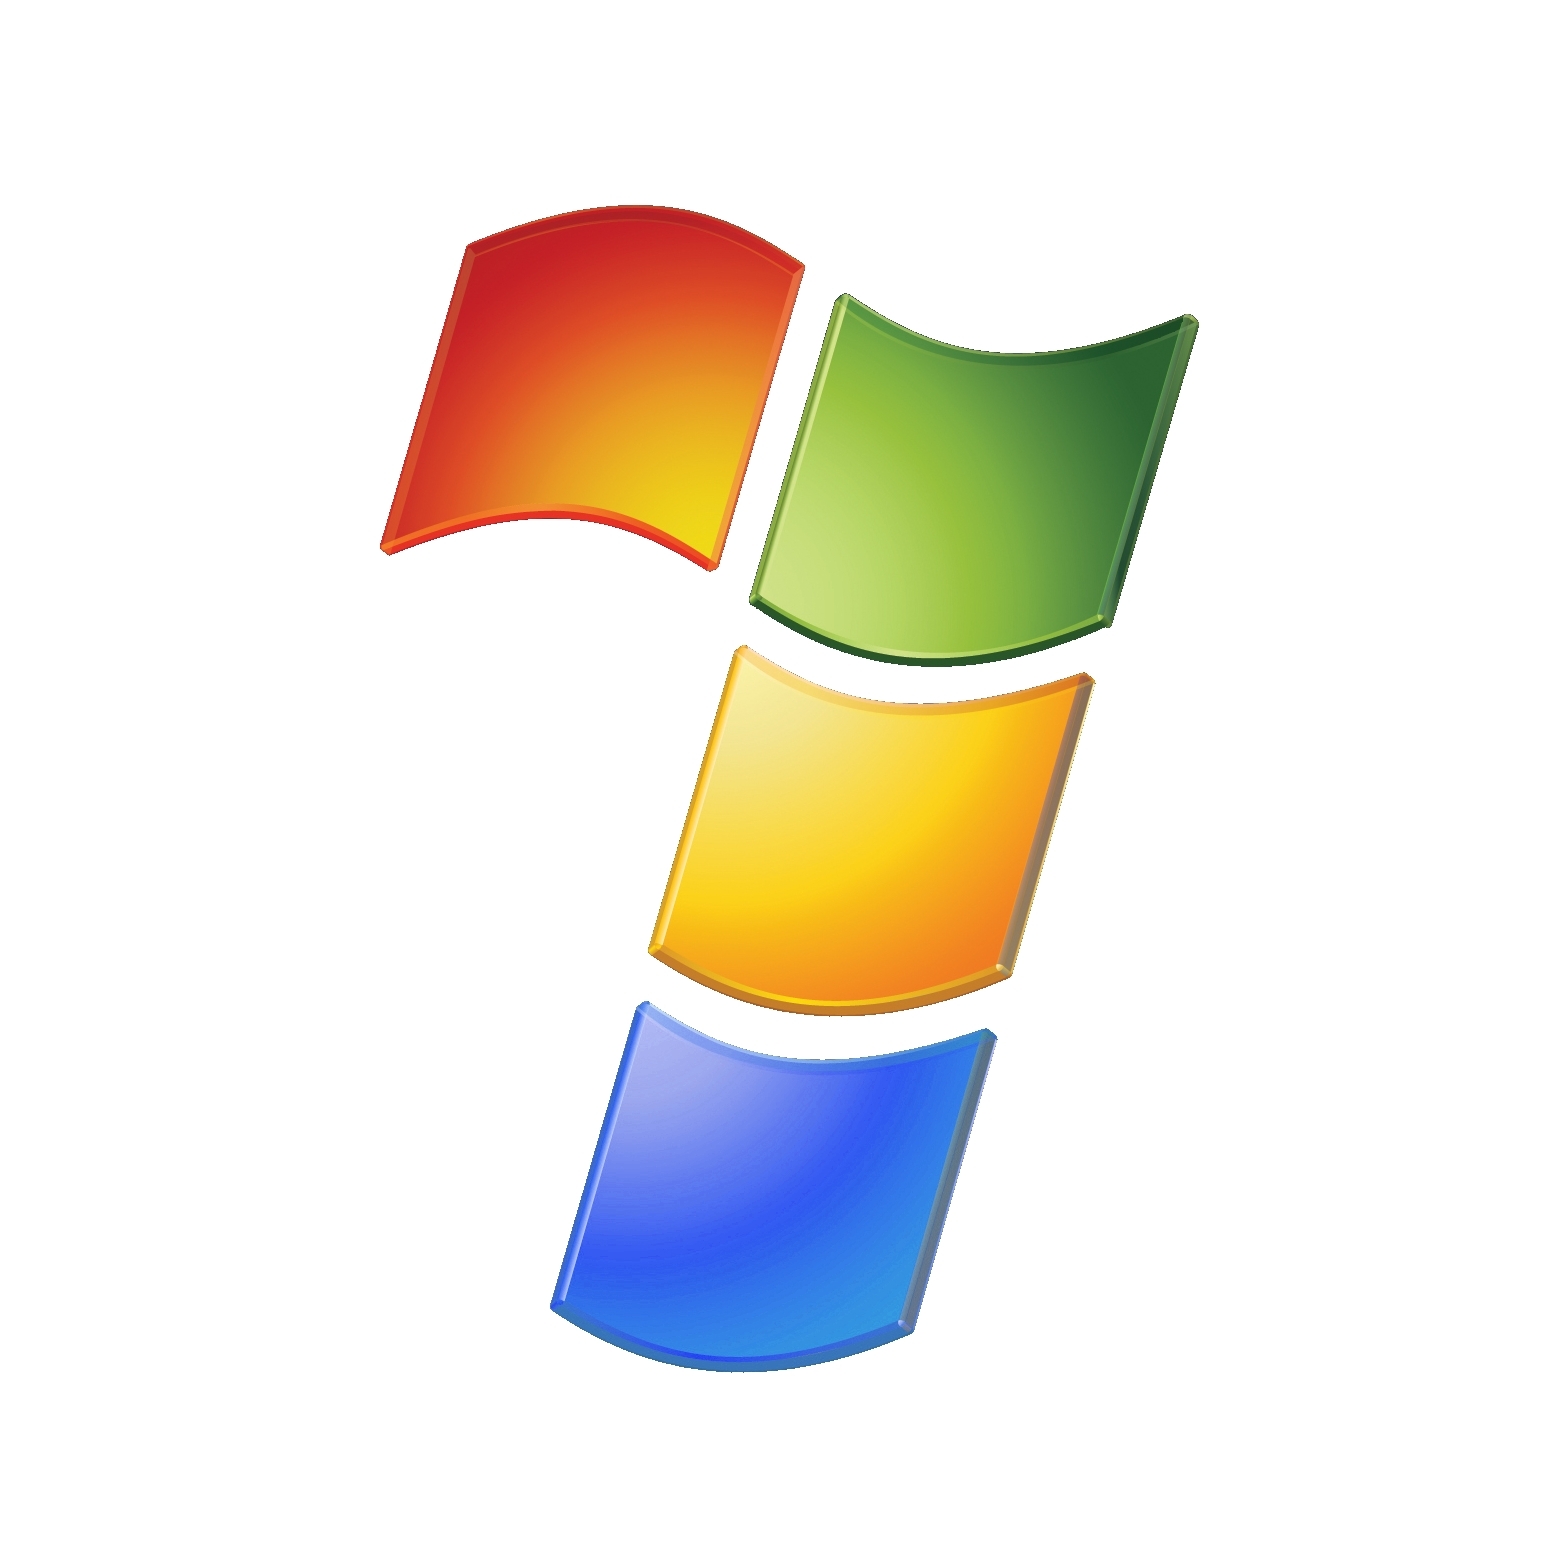 Windows 7 icons. Значок виндовс. Логотип Windows 7. Значок виндовс 7. Виндовс на прозрачном фоне.